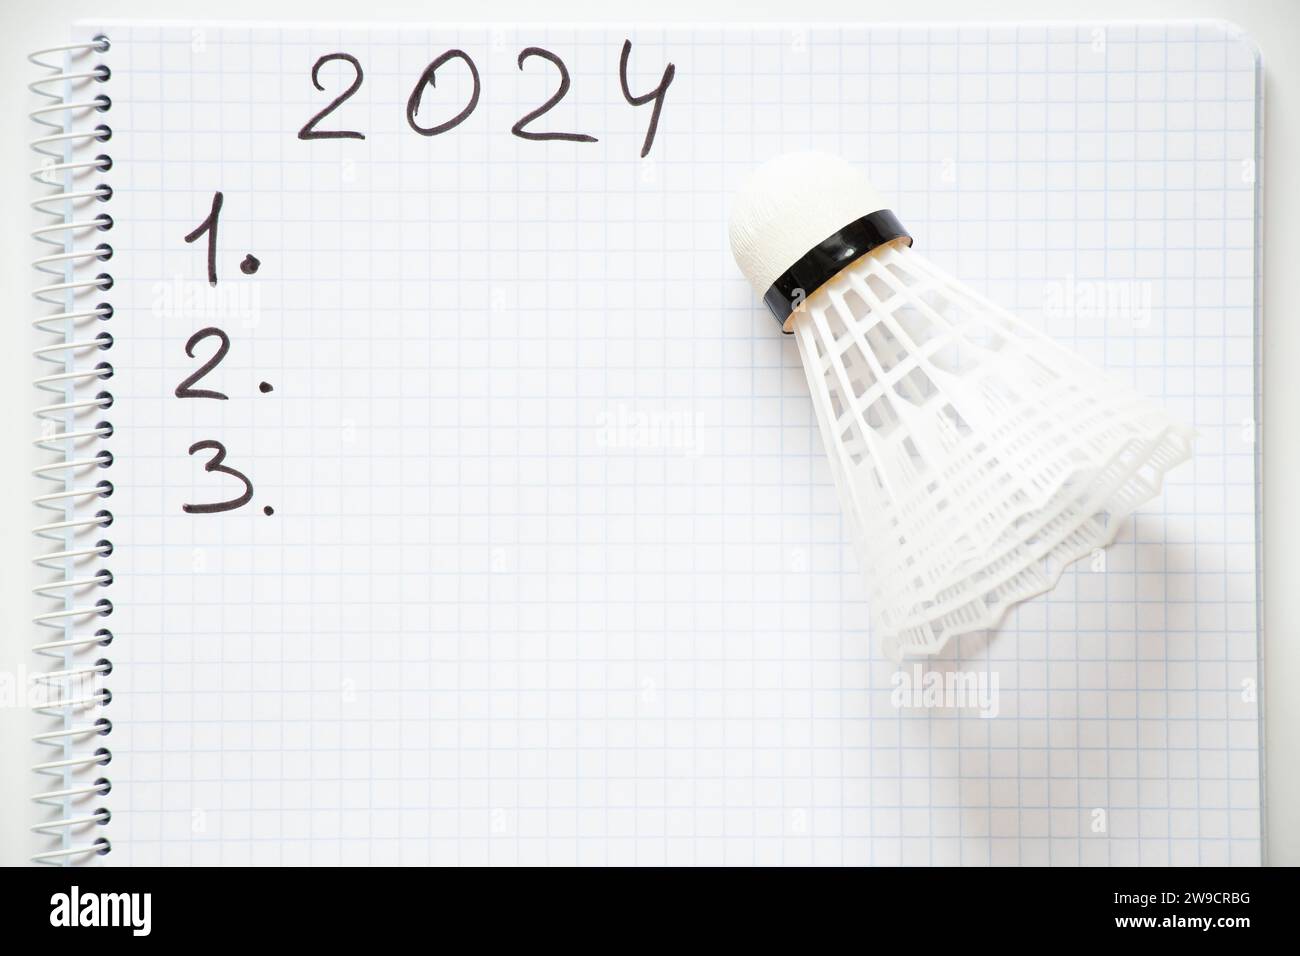 2024 und die Zahlen 123 sind in einem Notizbuch geschrieben und daneben liegt ein Shuttlecock auf weißem Hintergrund, der das neue Jahr plant Stockfoto